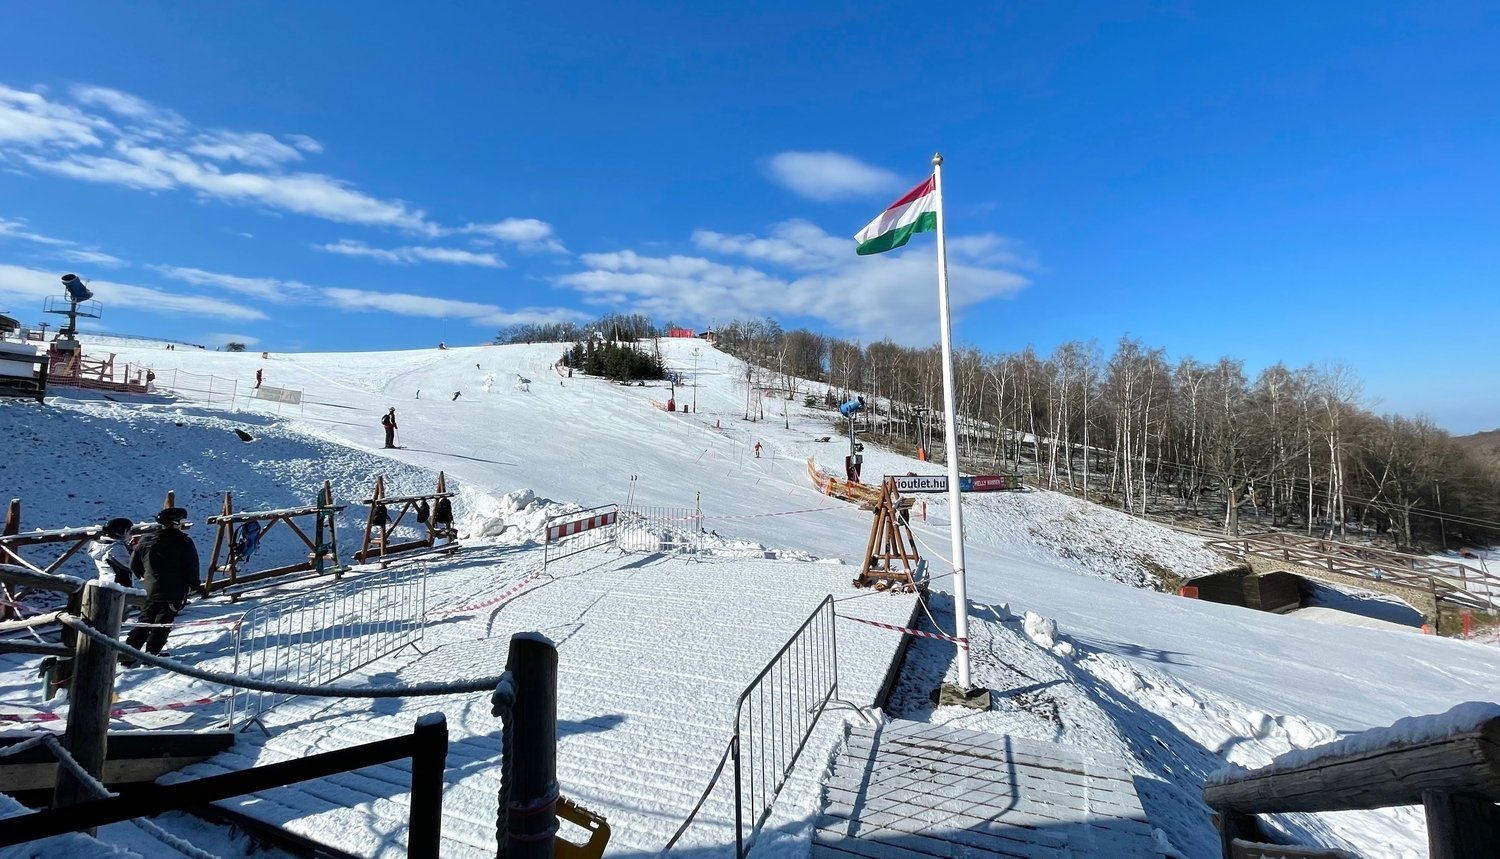 Mátraszentistván Sípark - like a tiny alpine ski resort in Hungary